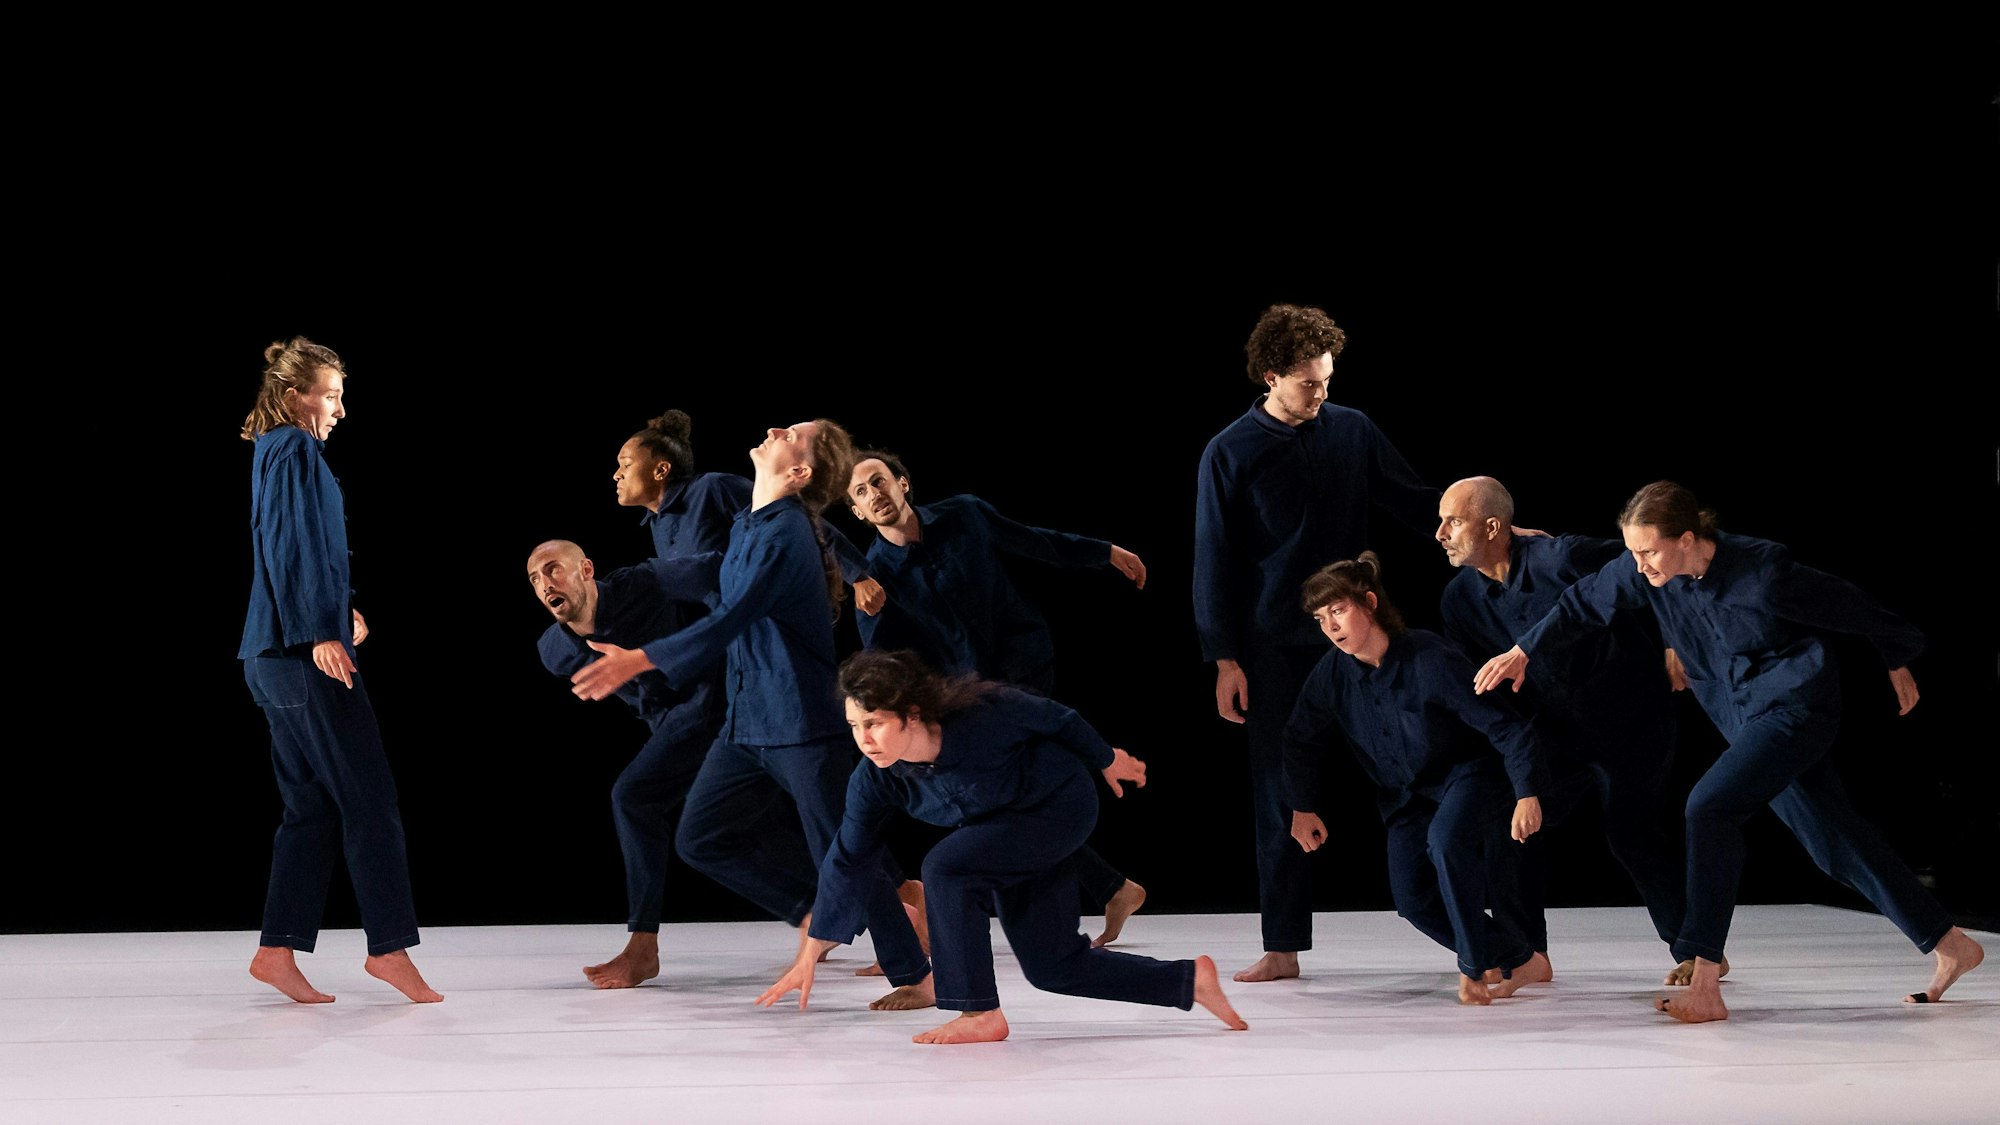 Die Tänzerinnen und Tänzer tragen blaue Hosen und Hemden und bewegen sich alle auf eine Tänzerin zu, die ihnen entgegenschaut. Der Hintergrund ist schwarz, der Bühnenboden ist weiß.